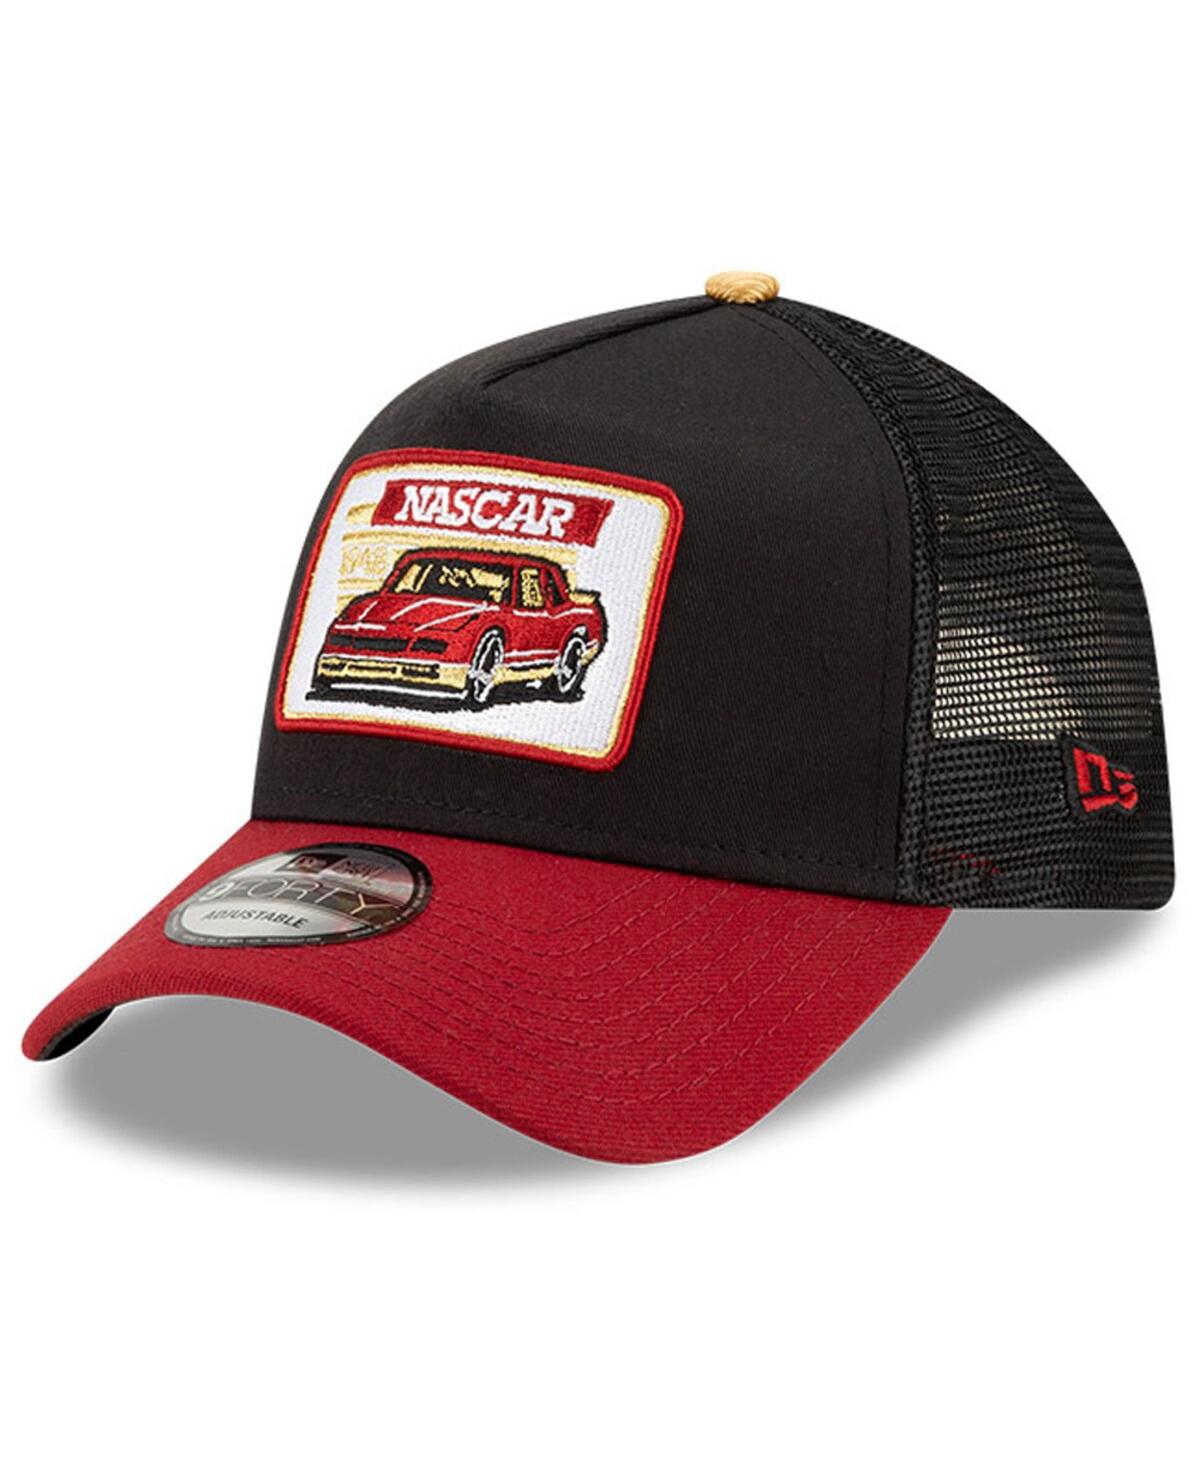 NEW ERA MEN'S NEW ERA BLACK, RED NASCAR LEGENDS 9FORTY A-FRAME ADJUSTABLE TRUCKER HAT